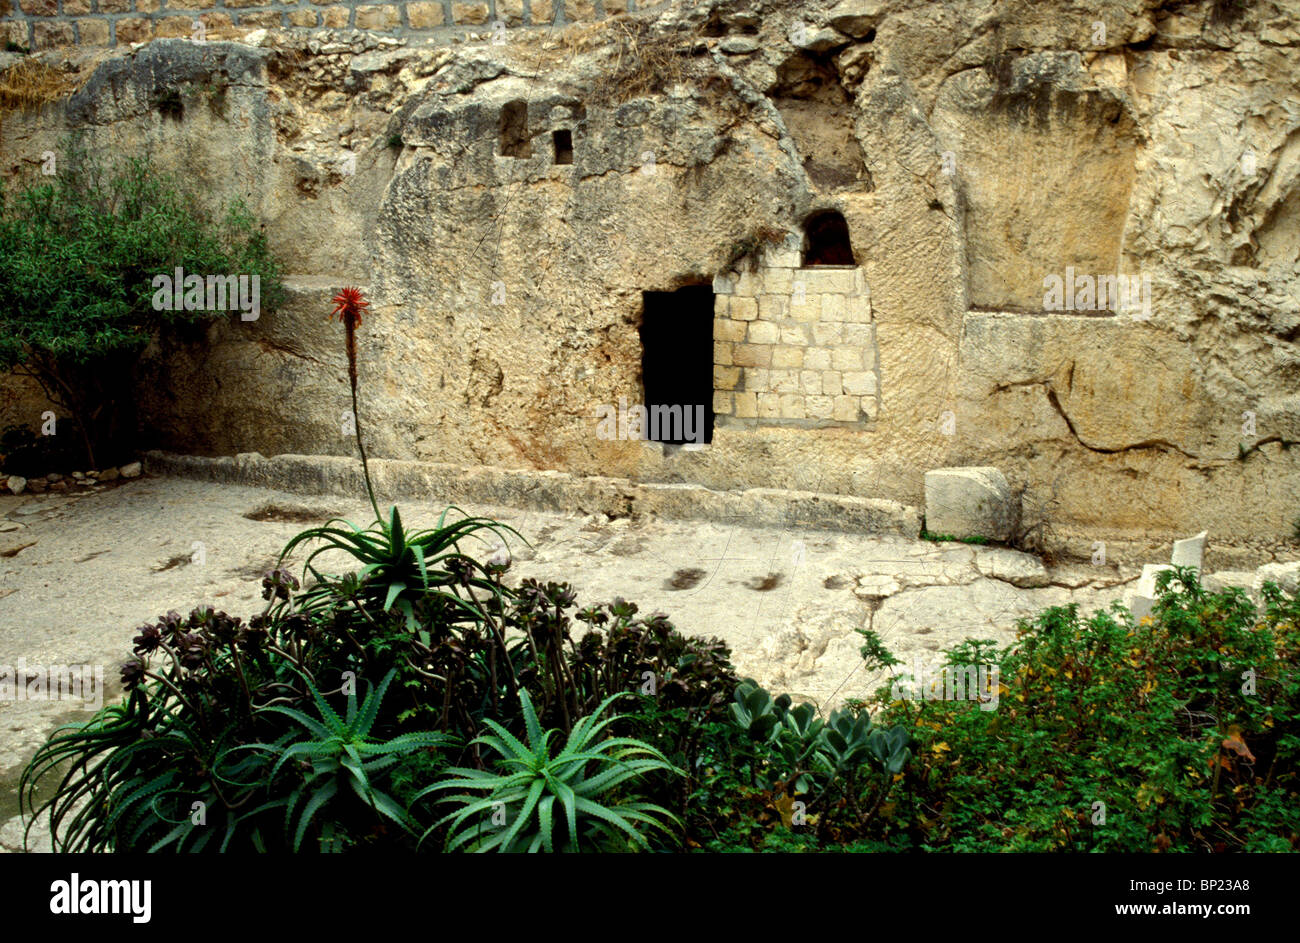 Tomba del giardino o il calvario secondo alcune tradizioni questo è il sito di sepoltura di Cristo al di fuori delle mura della città di Foto Stock